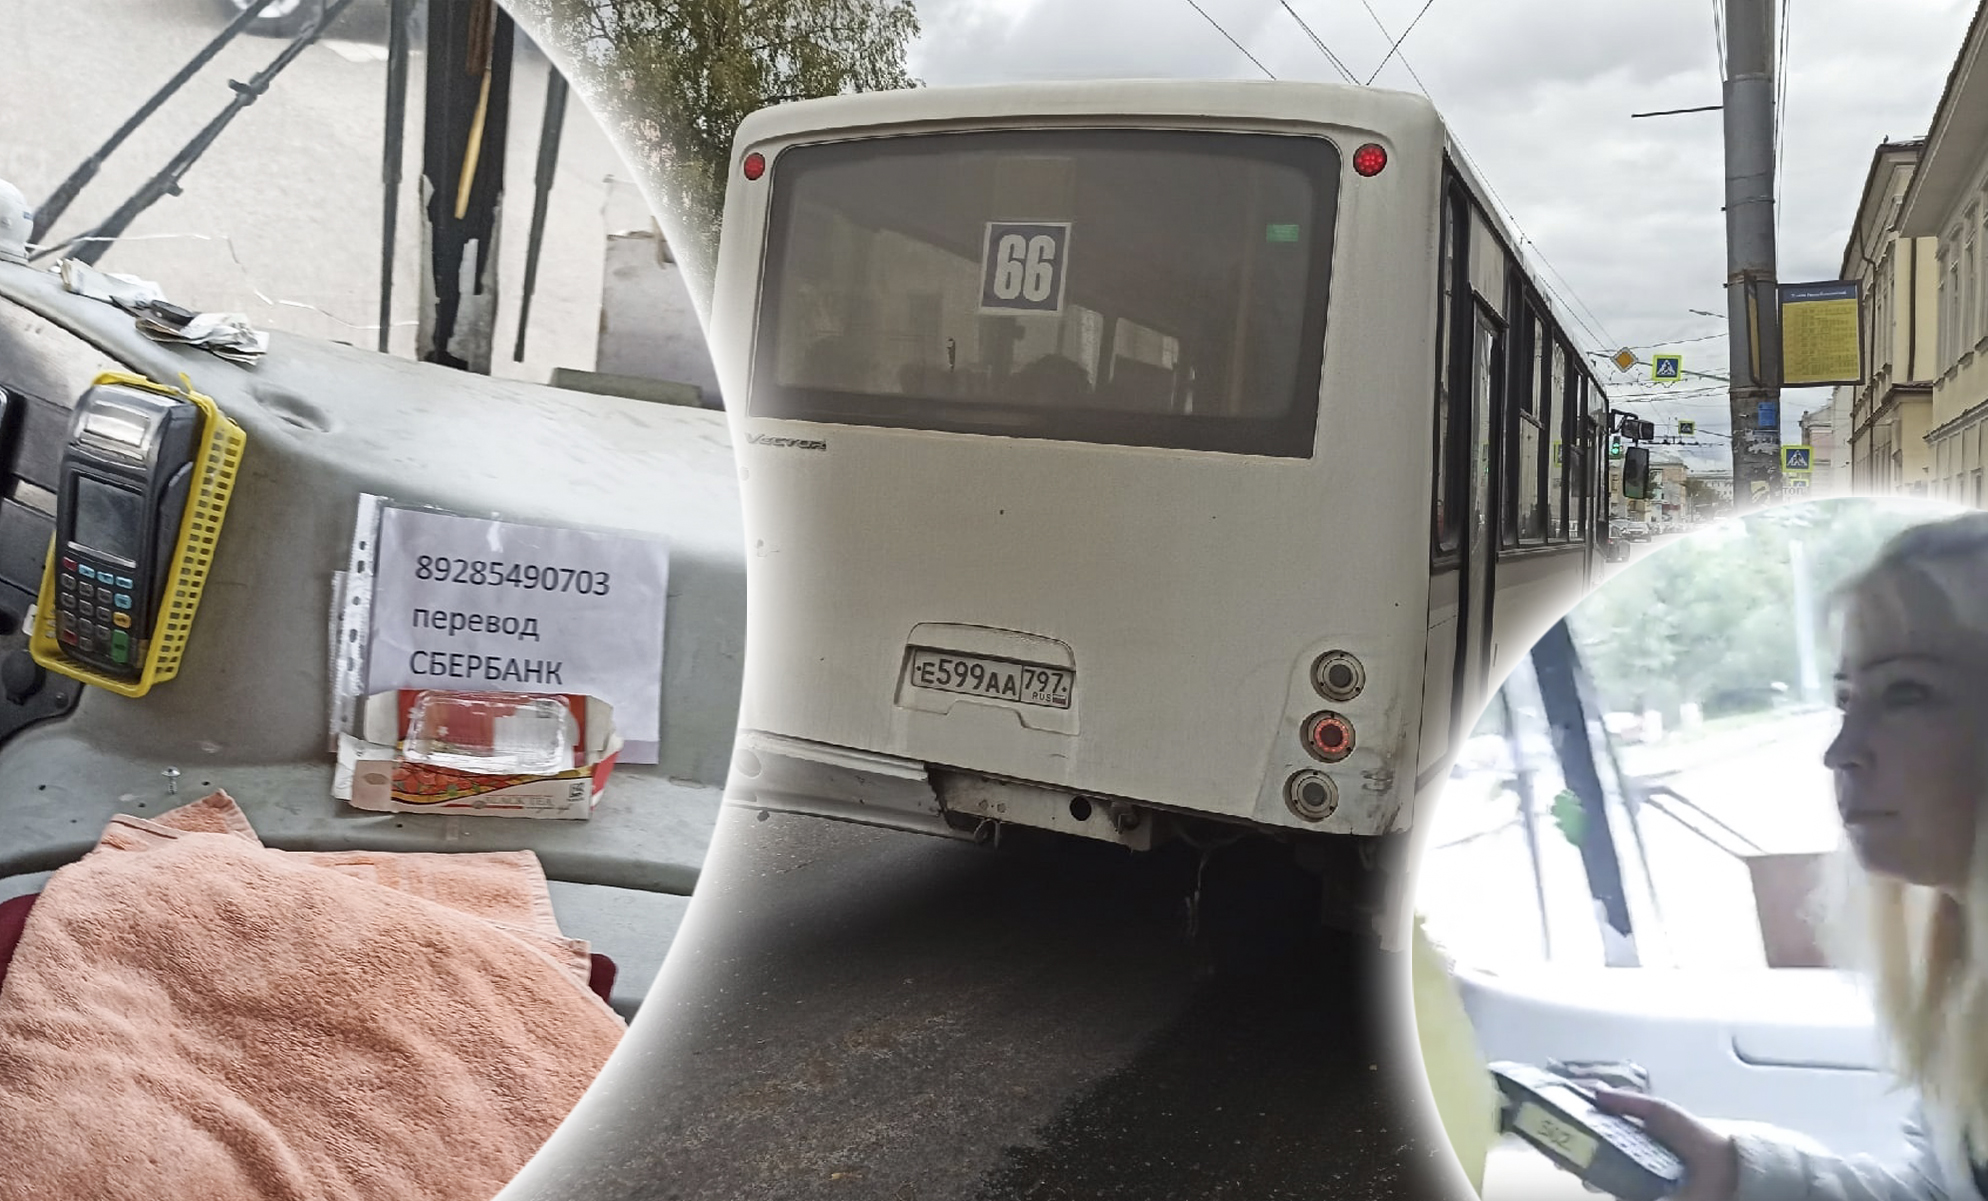   "Камеру уберите!": в Ярославле произошли массовые сбои с оплатой в автобусах